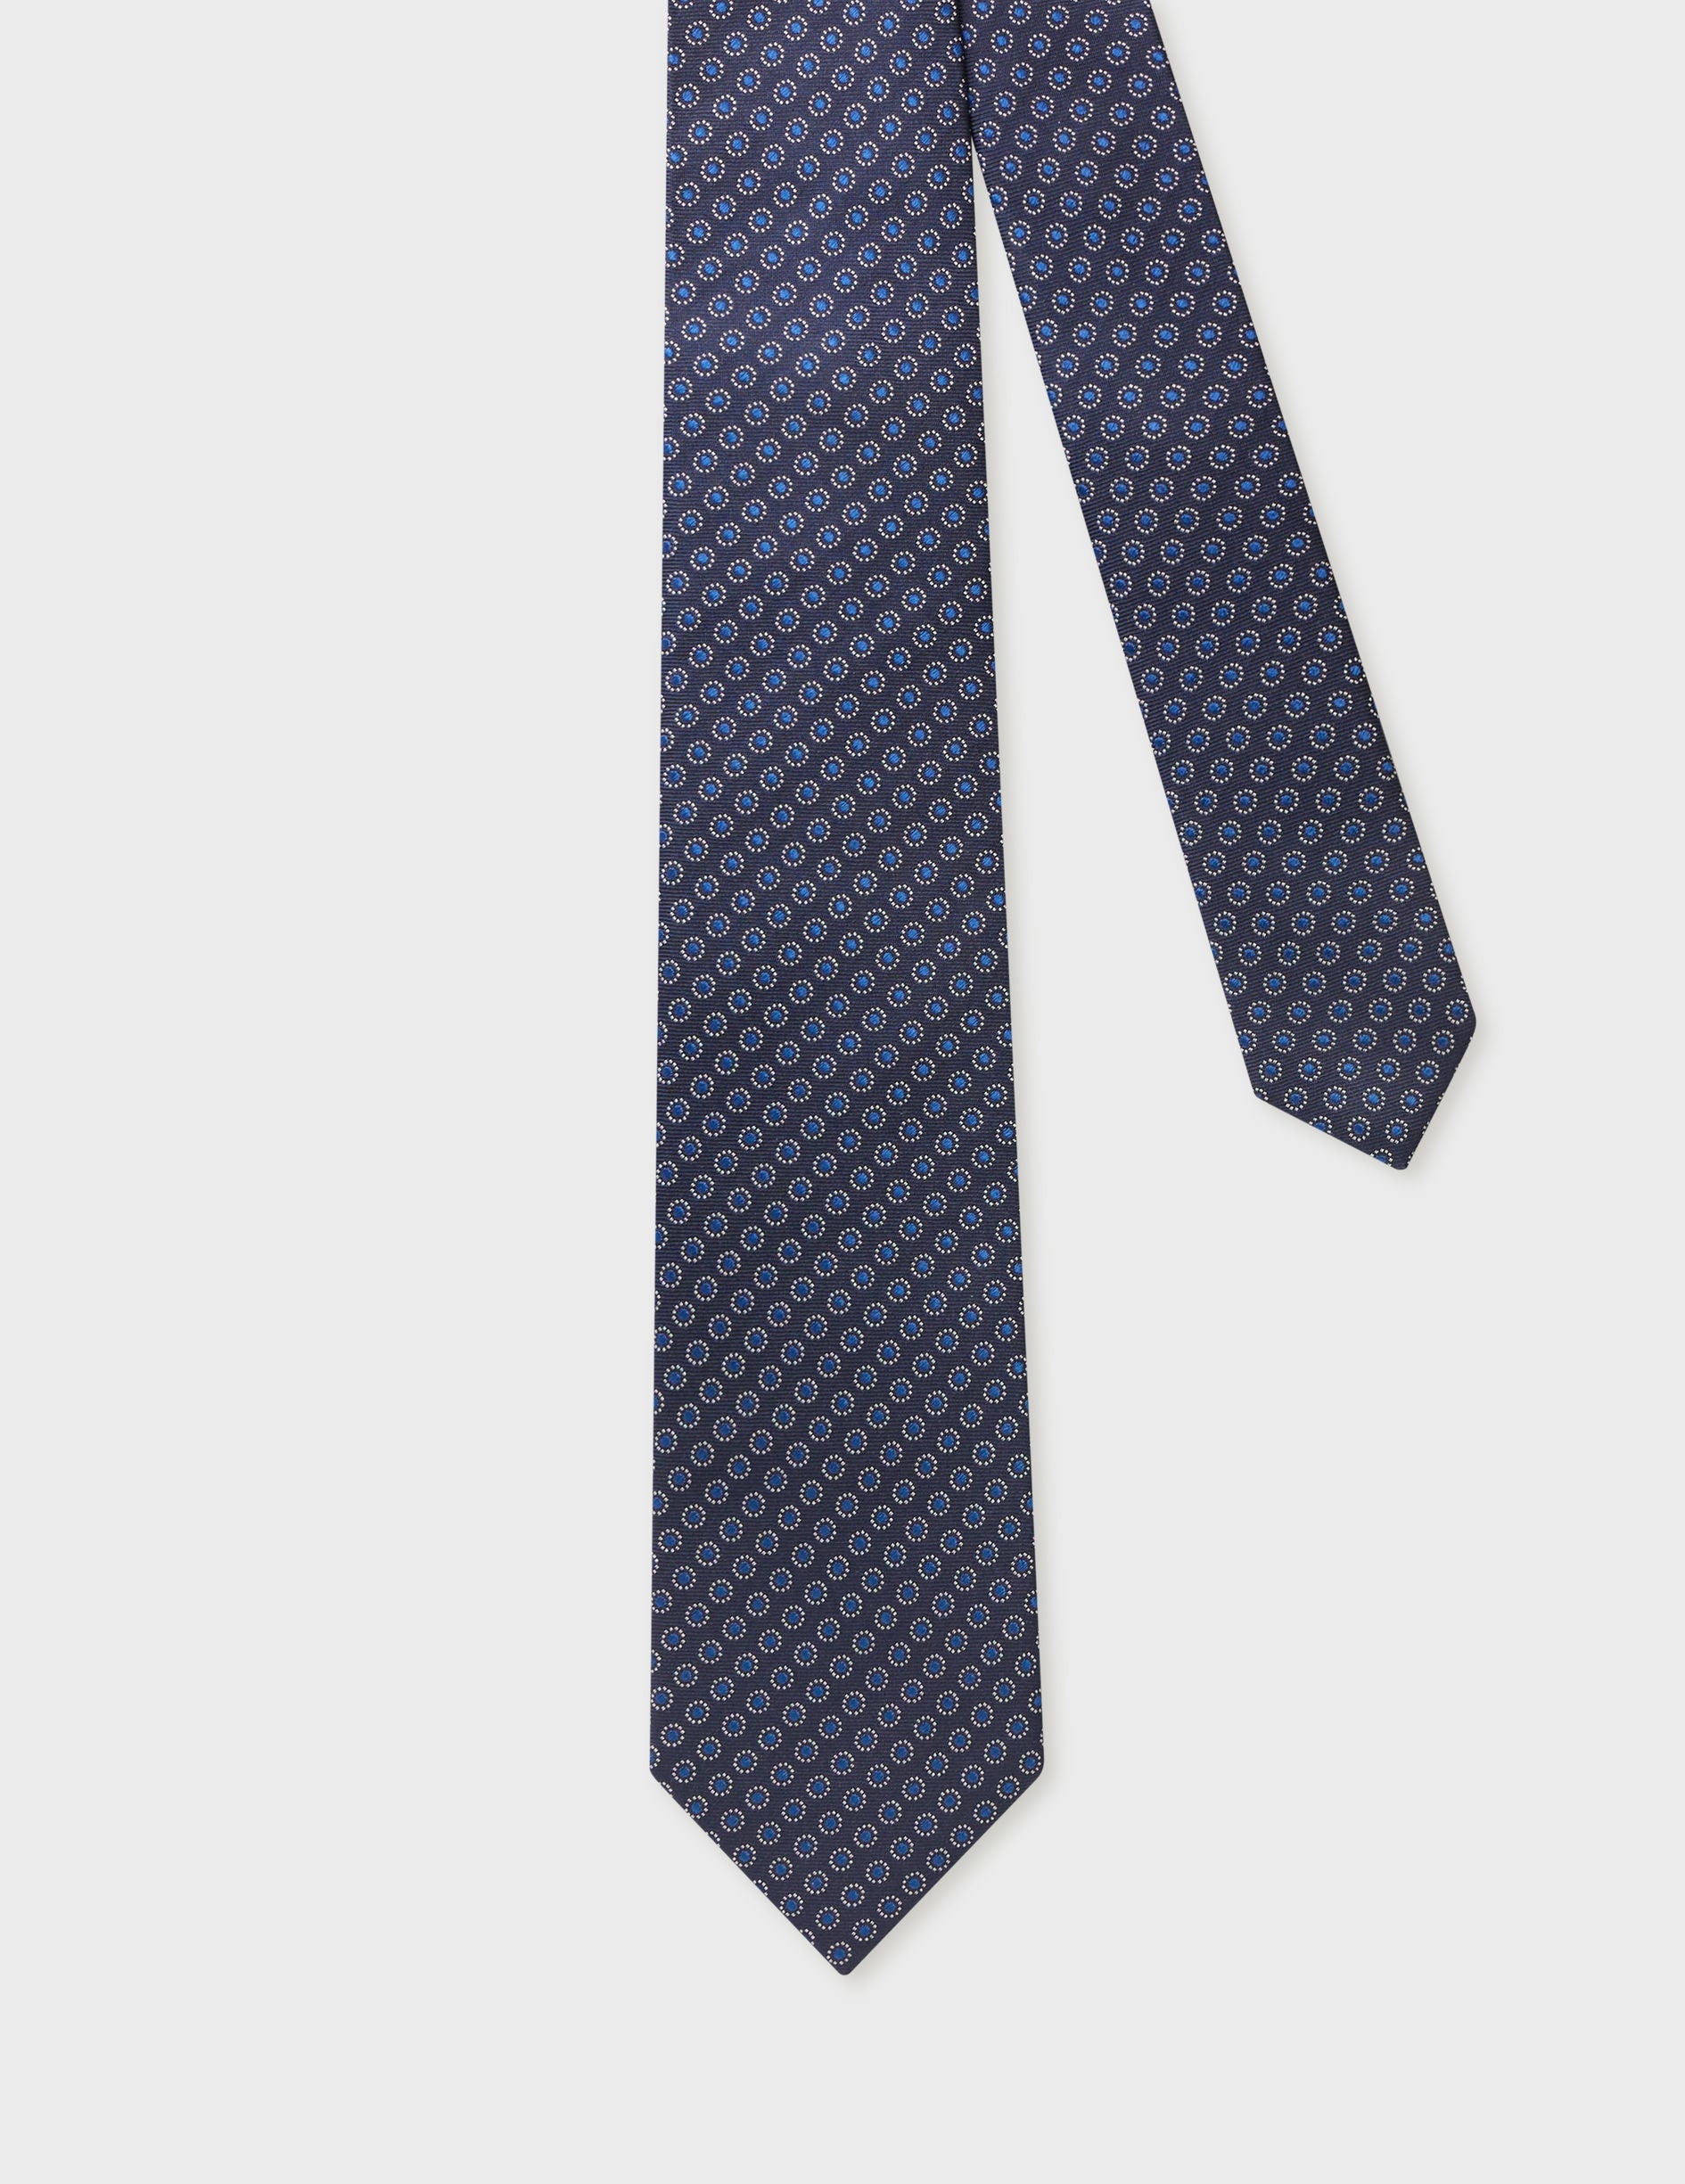 Cravate 7 plis en soie marine à motifs